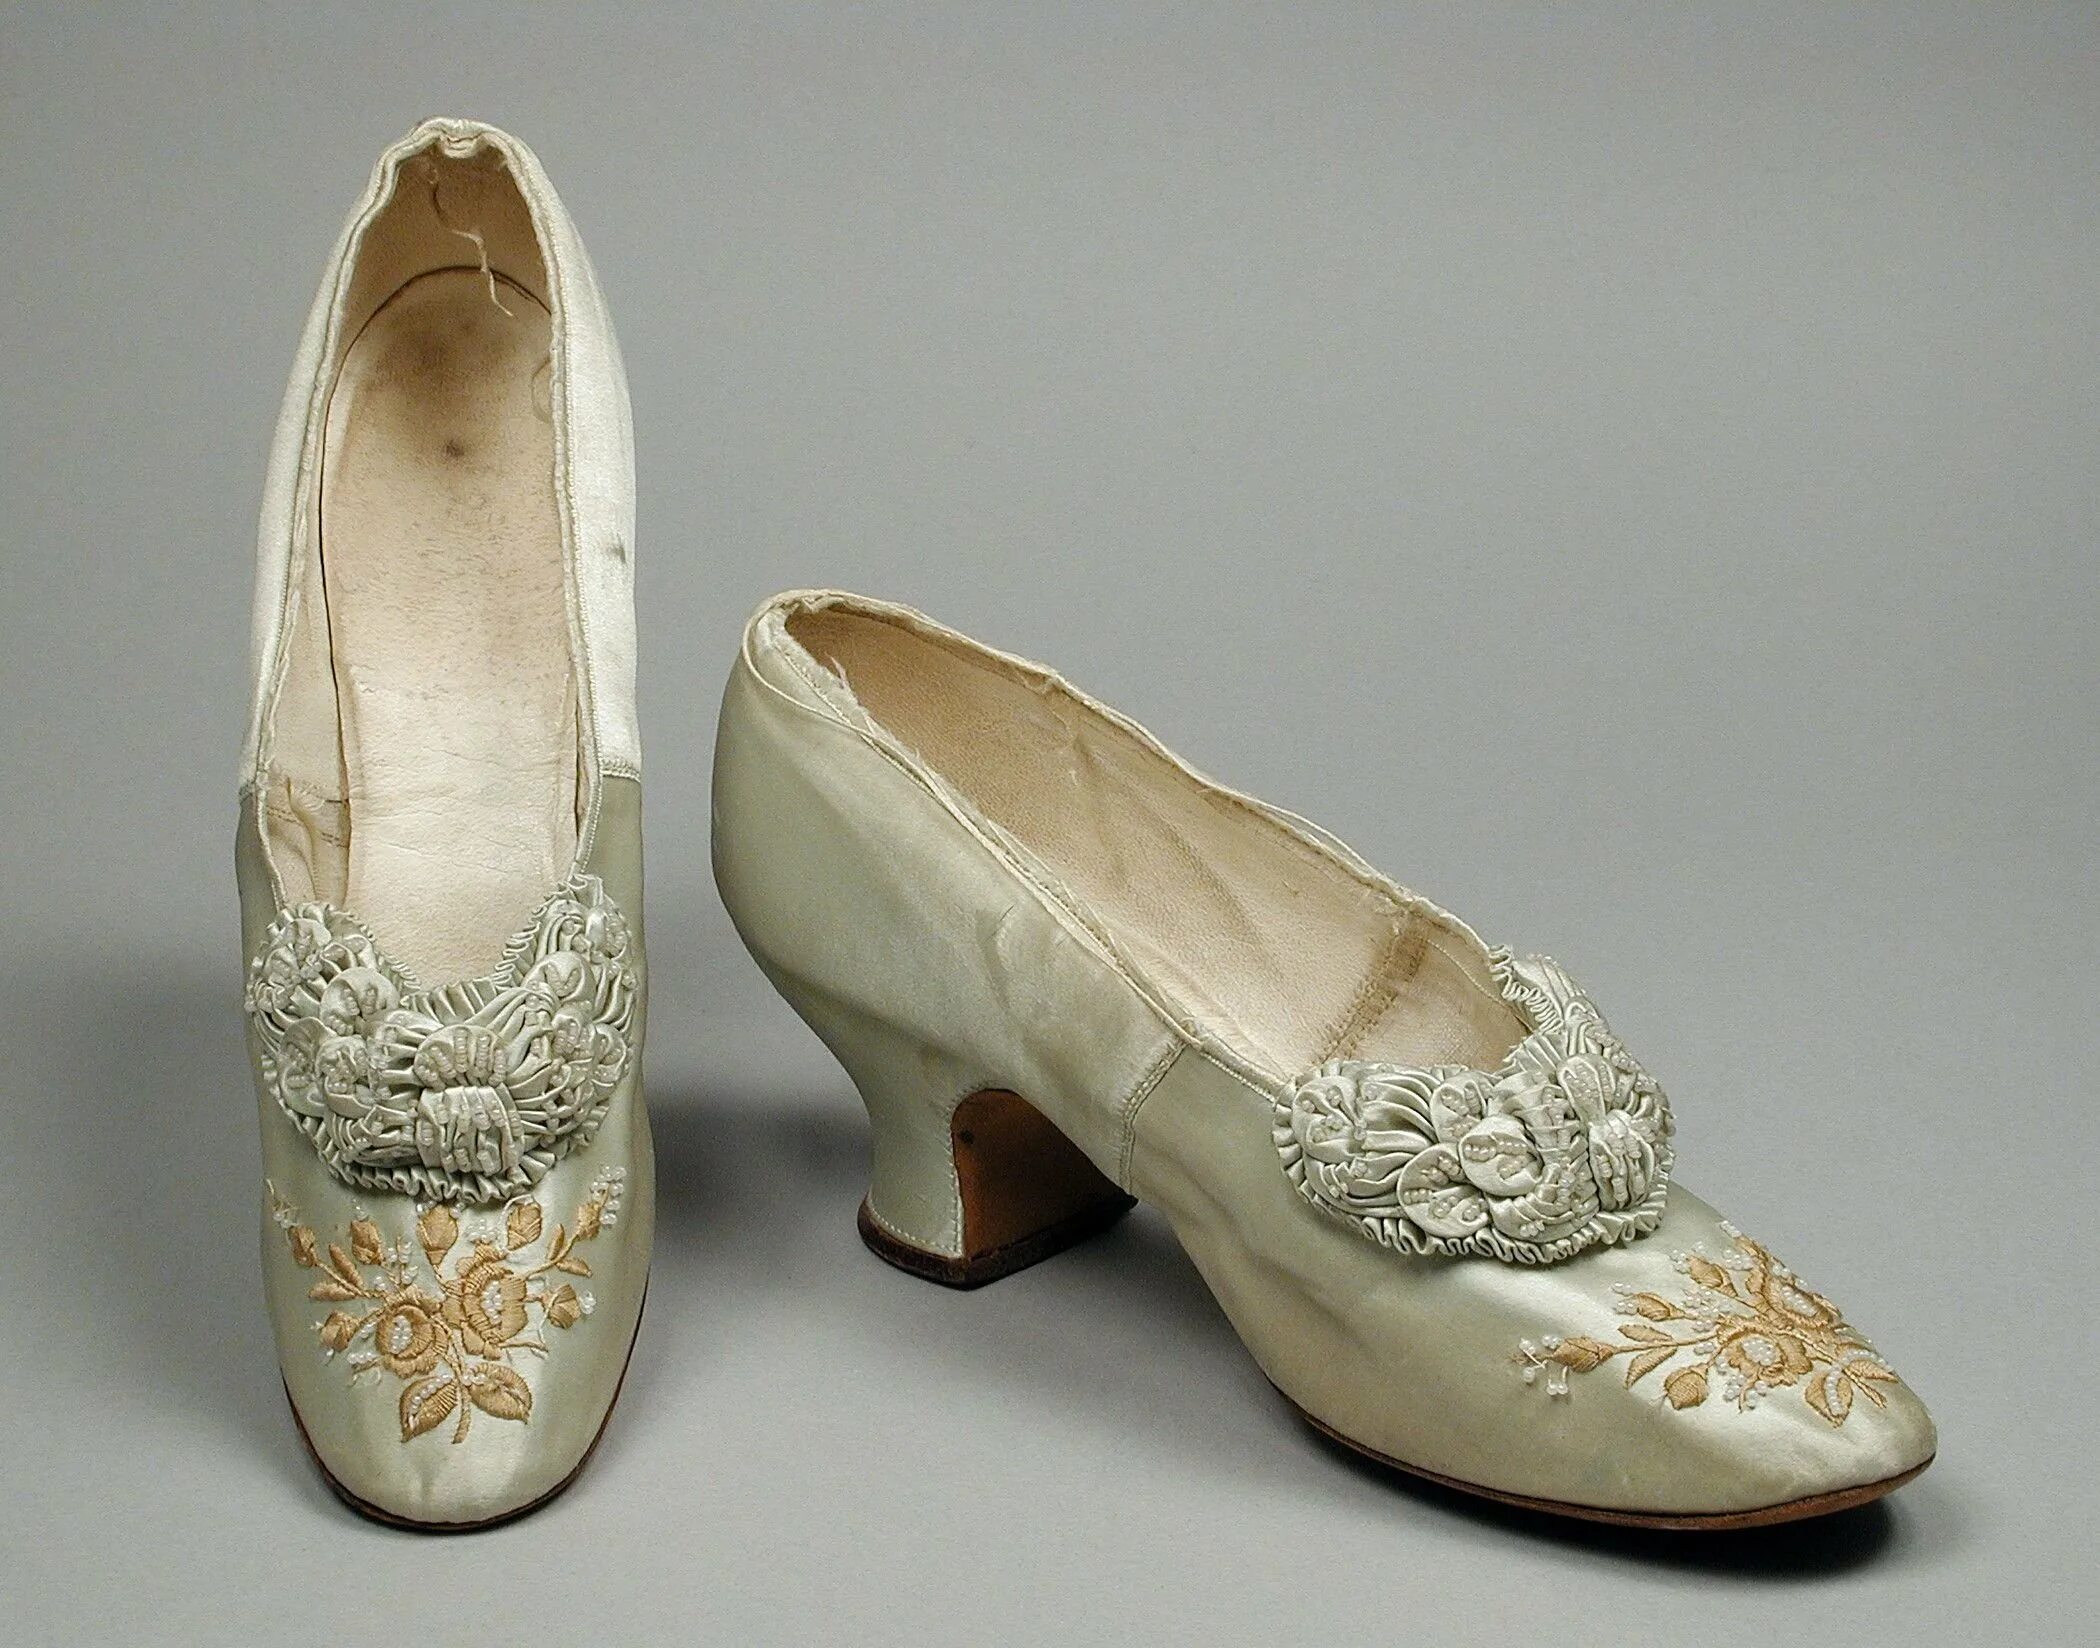 Виды обуви старые. Обувь Ампир 19 век. Обувь стиля Бидермайер 19 век. Обувь Барокко 17 век Клюши. Обувь эпохи бидермейер 19 века..